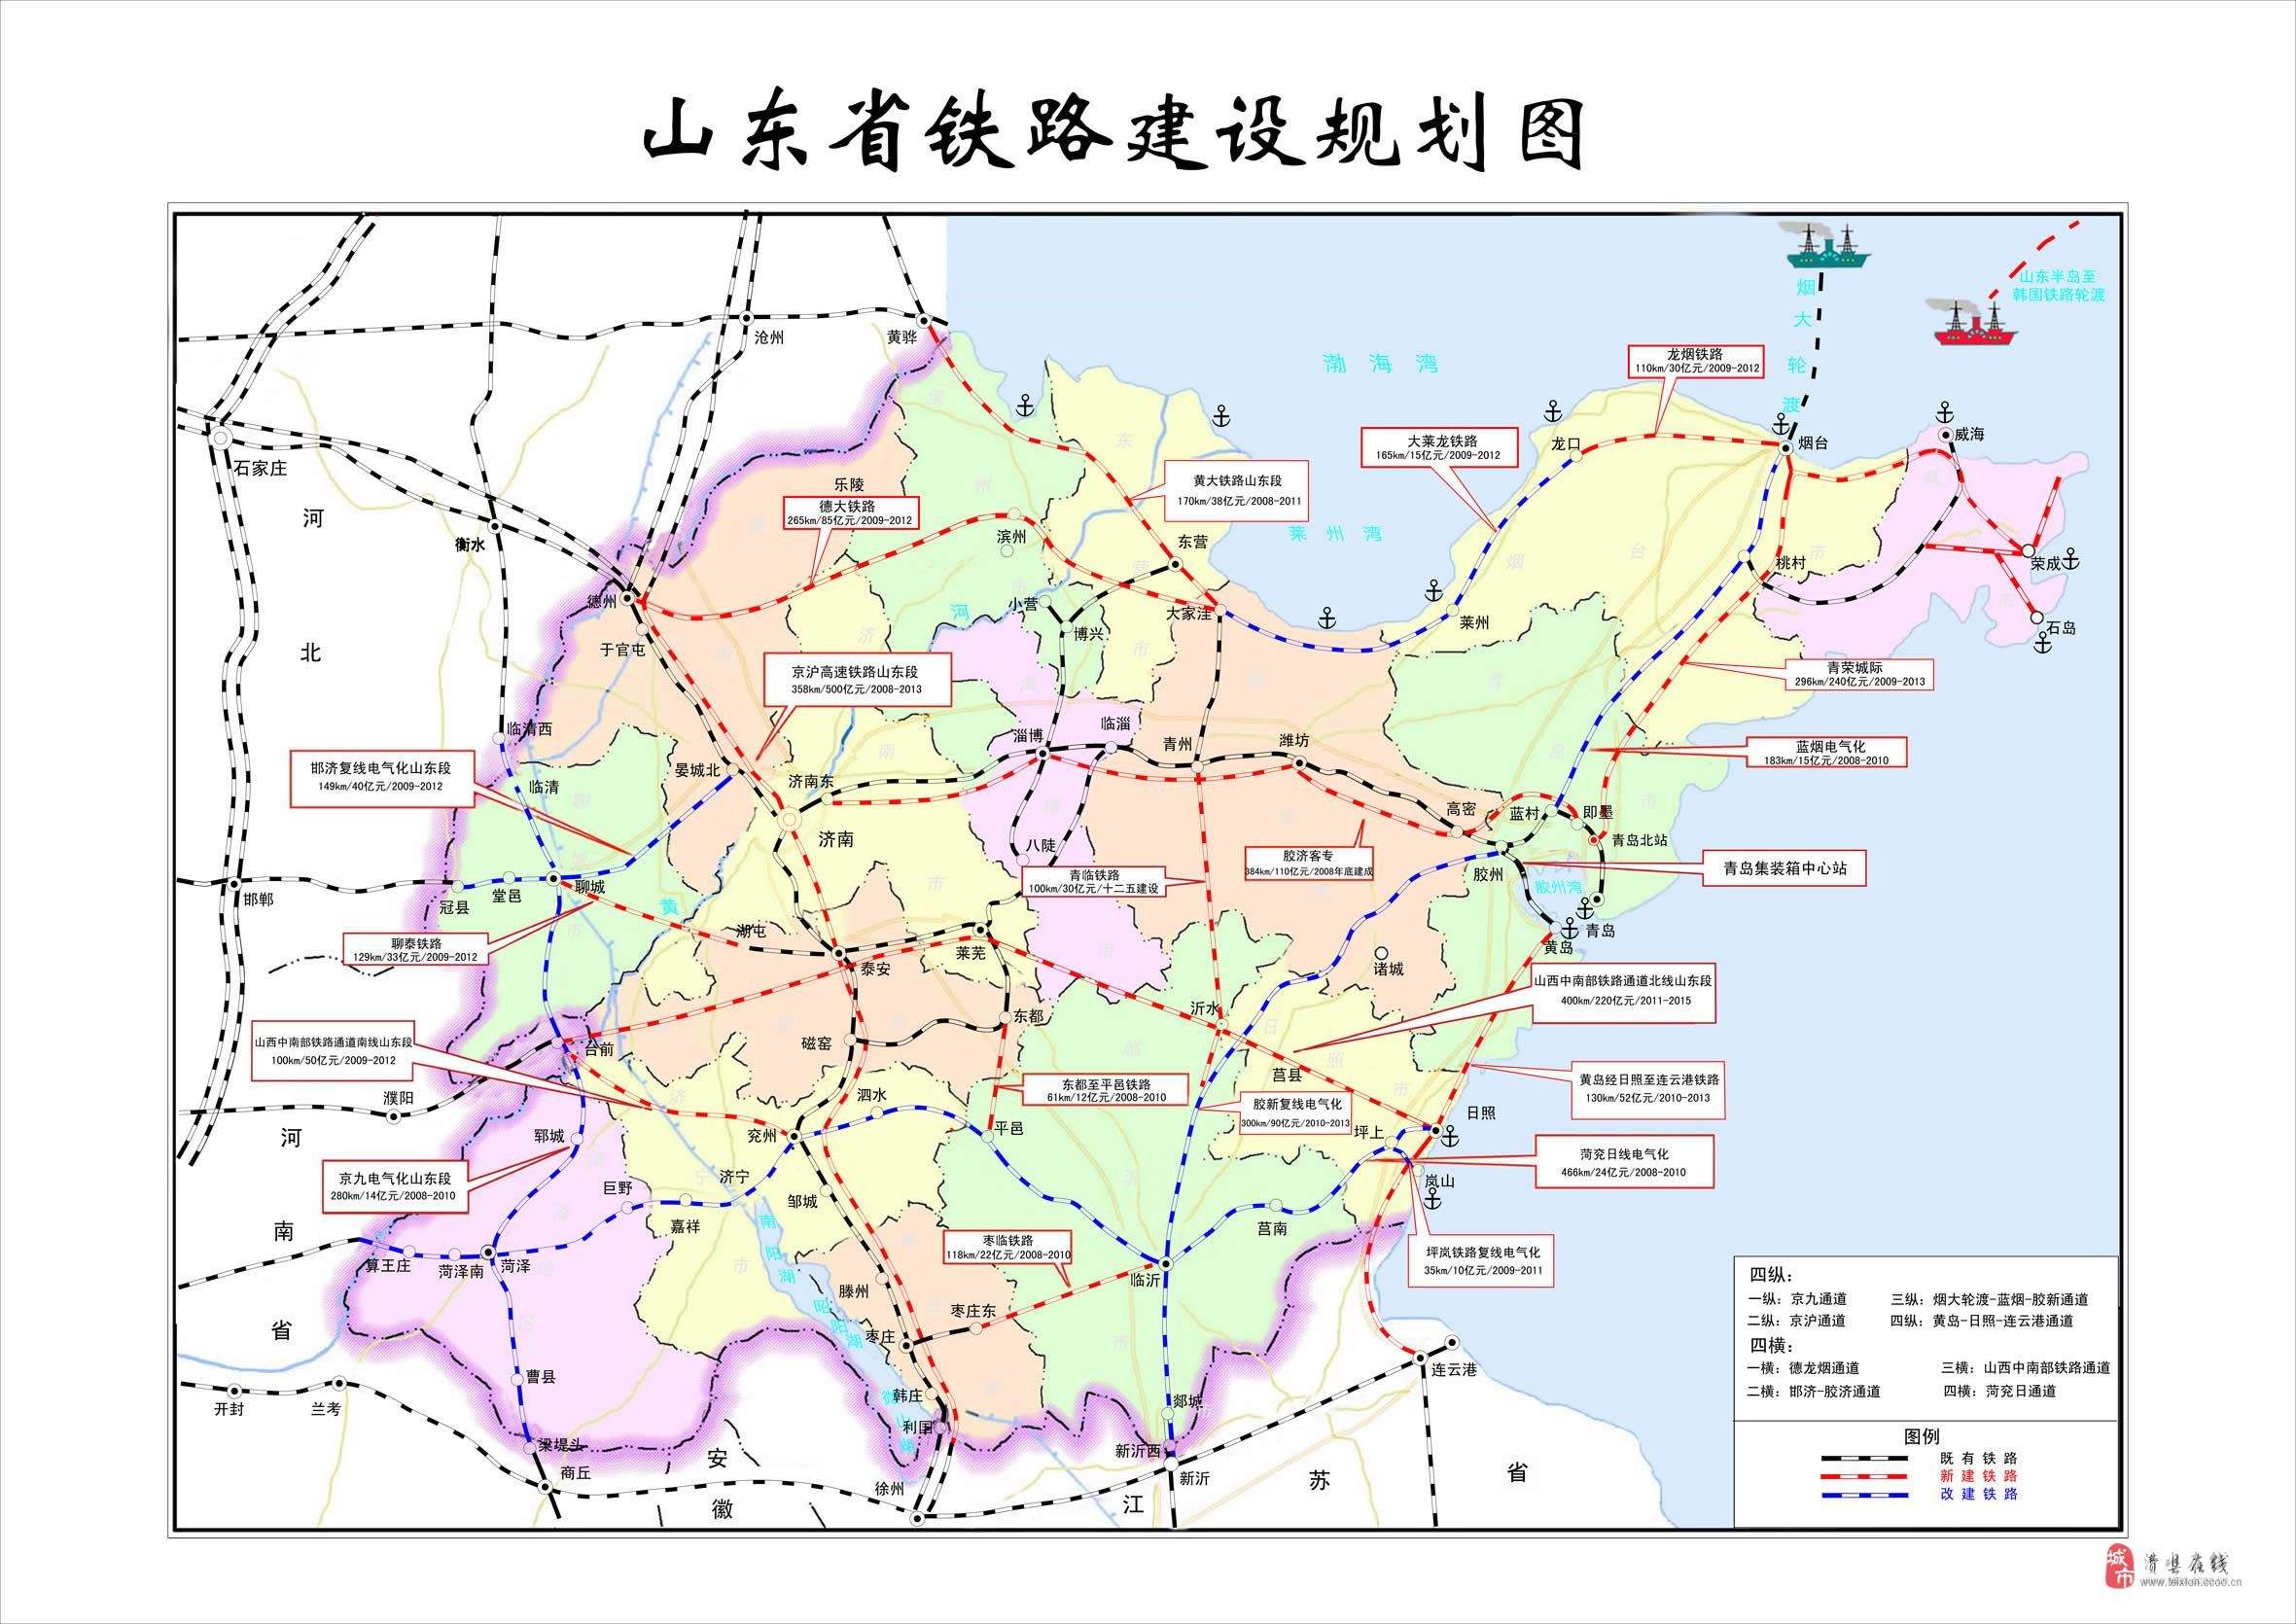 超高清收藏！中国高铁线路图2019年1月版-高铁,线路,铁路 ——快科技(驱动之家旗下媒体)--科技改变未来